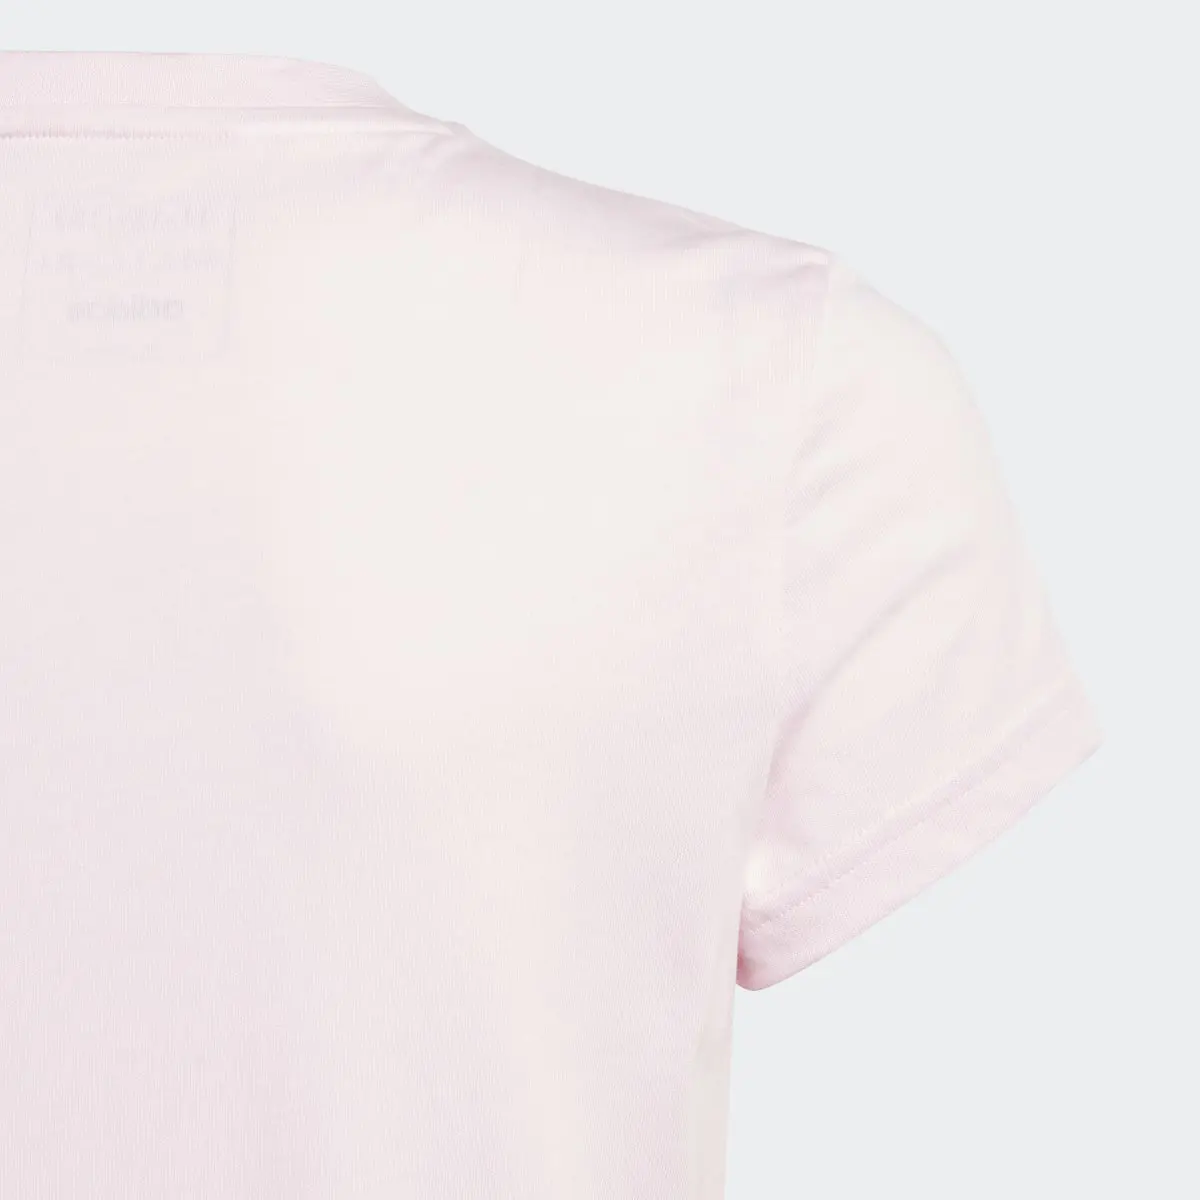 Adidas T-shirt de Algodão Essentials. 3